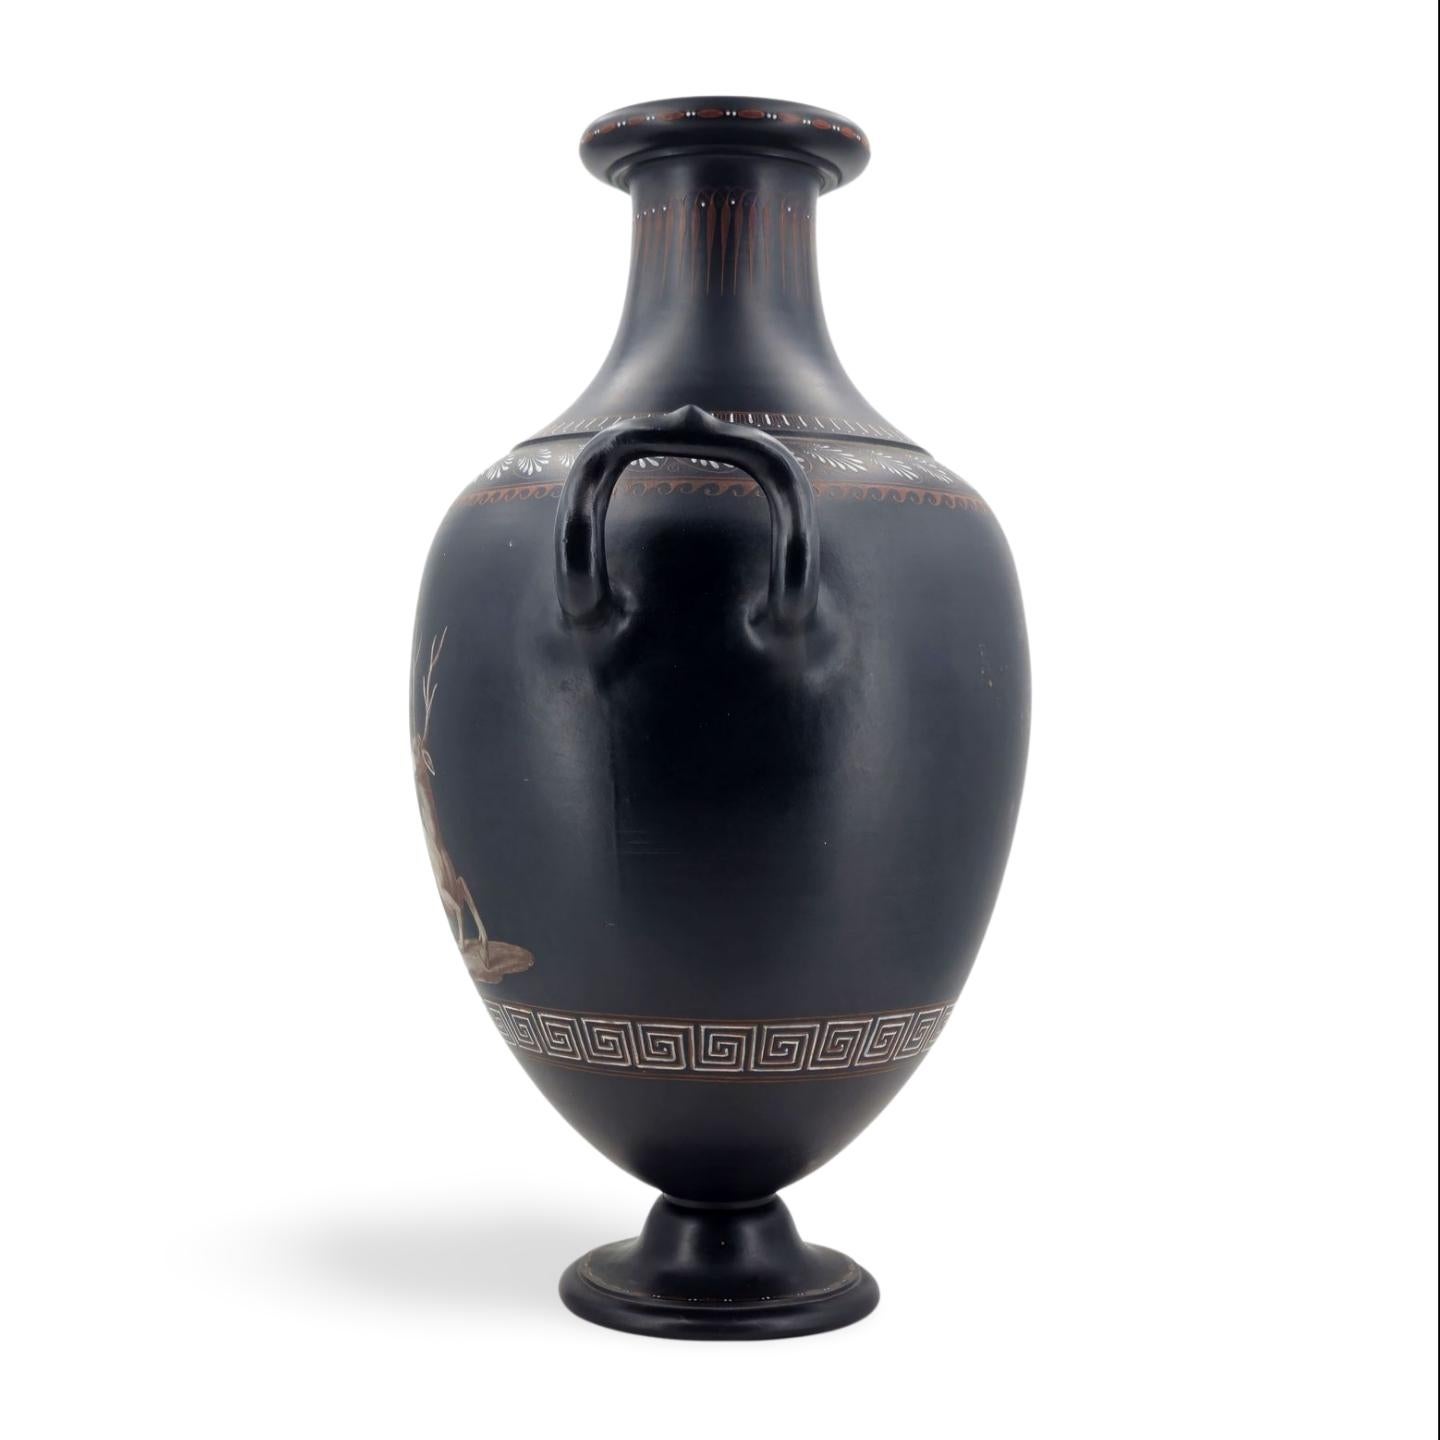 Ce grand vase en basalte noir est décoré d'une illustration peinte en grisaille représentant Orphée jouant de la lyre, avec un cerf assis tranquillement, écoutant son jeu - et peut-être chantant, bien que sa bouche soit représentée fermée.


Le